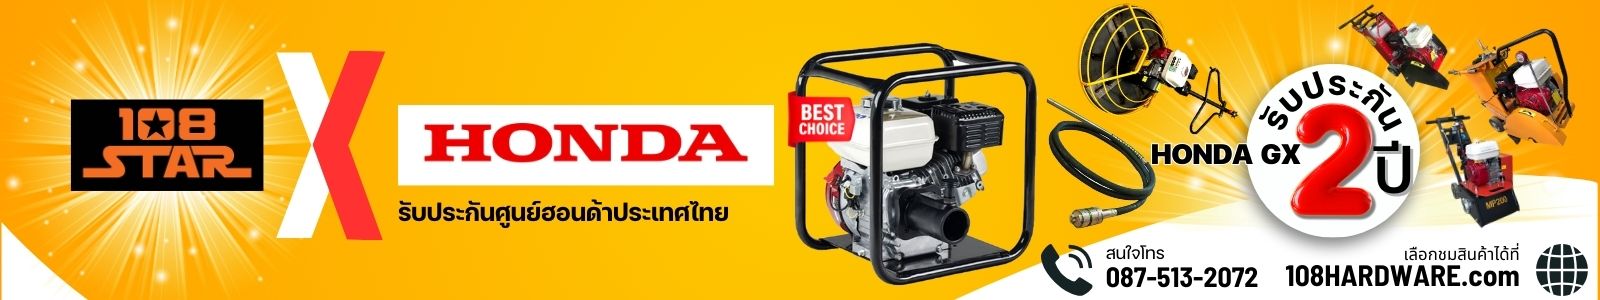 ช่วงเวลาพิเศษสุด ของเครื่องมือก่อสร้าง 108STAR มาพร้อมกับขุมพลัง เครื่องยนต์ HONDA GX รับประกันศูนย์ฮอนด้าประเทศไทย แท้ 100% มั่นใจได้